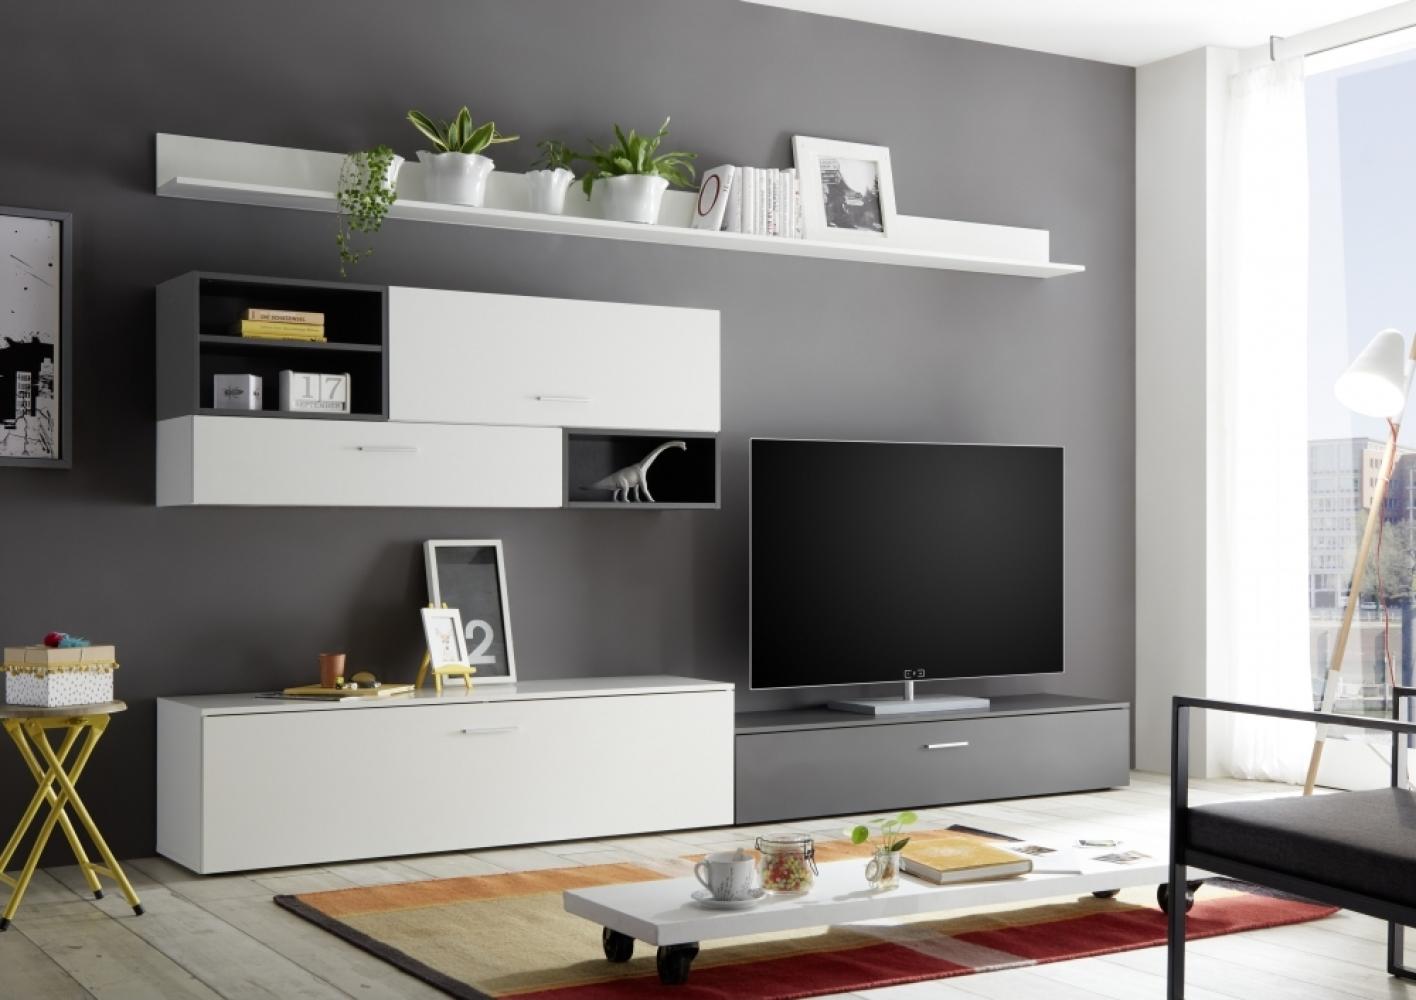 NEW VISION Weiß / Grau Wohnwand Anbauwand Wohnzimmerschrank TV Schrank ca. 300 cm Bild 1